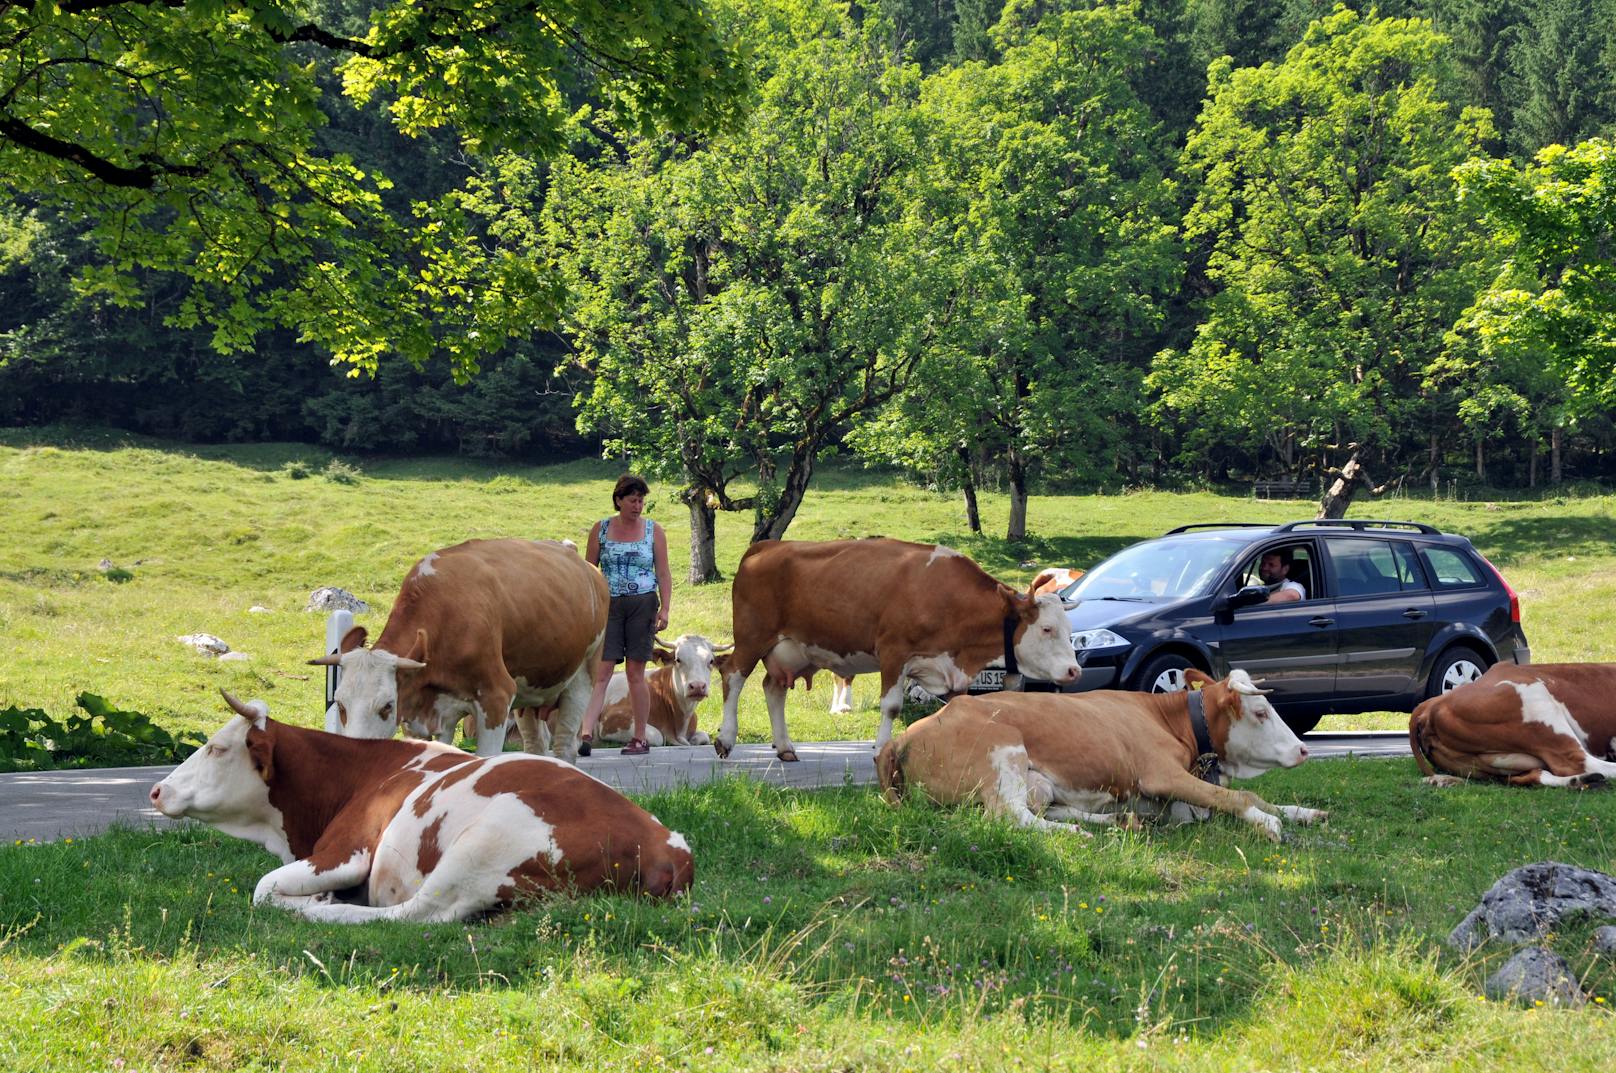 Lkw erfasst Rinderherde – 3 Tiere tot